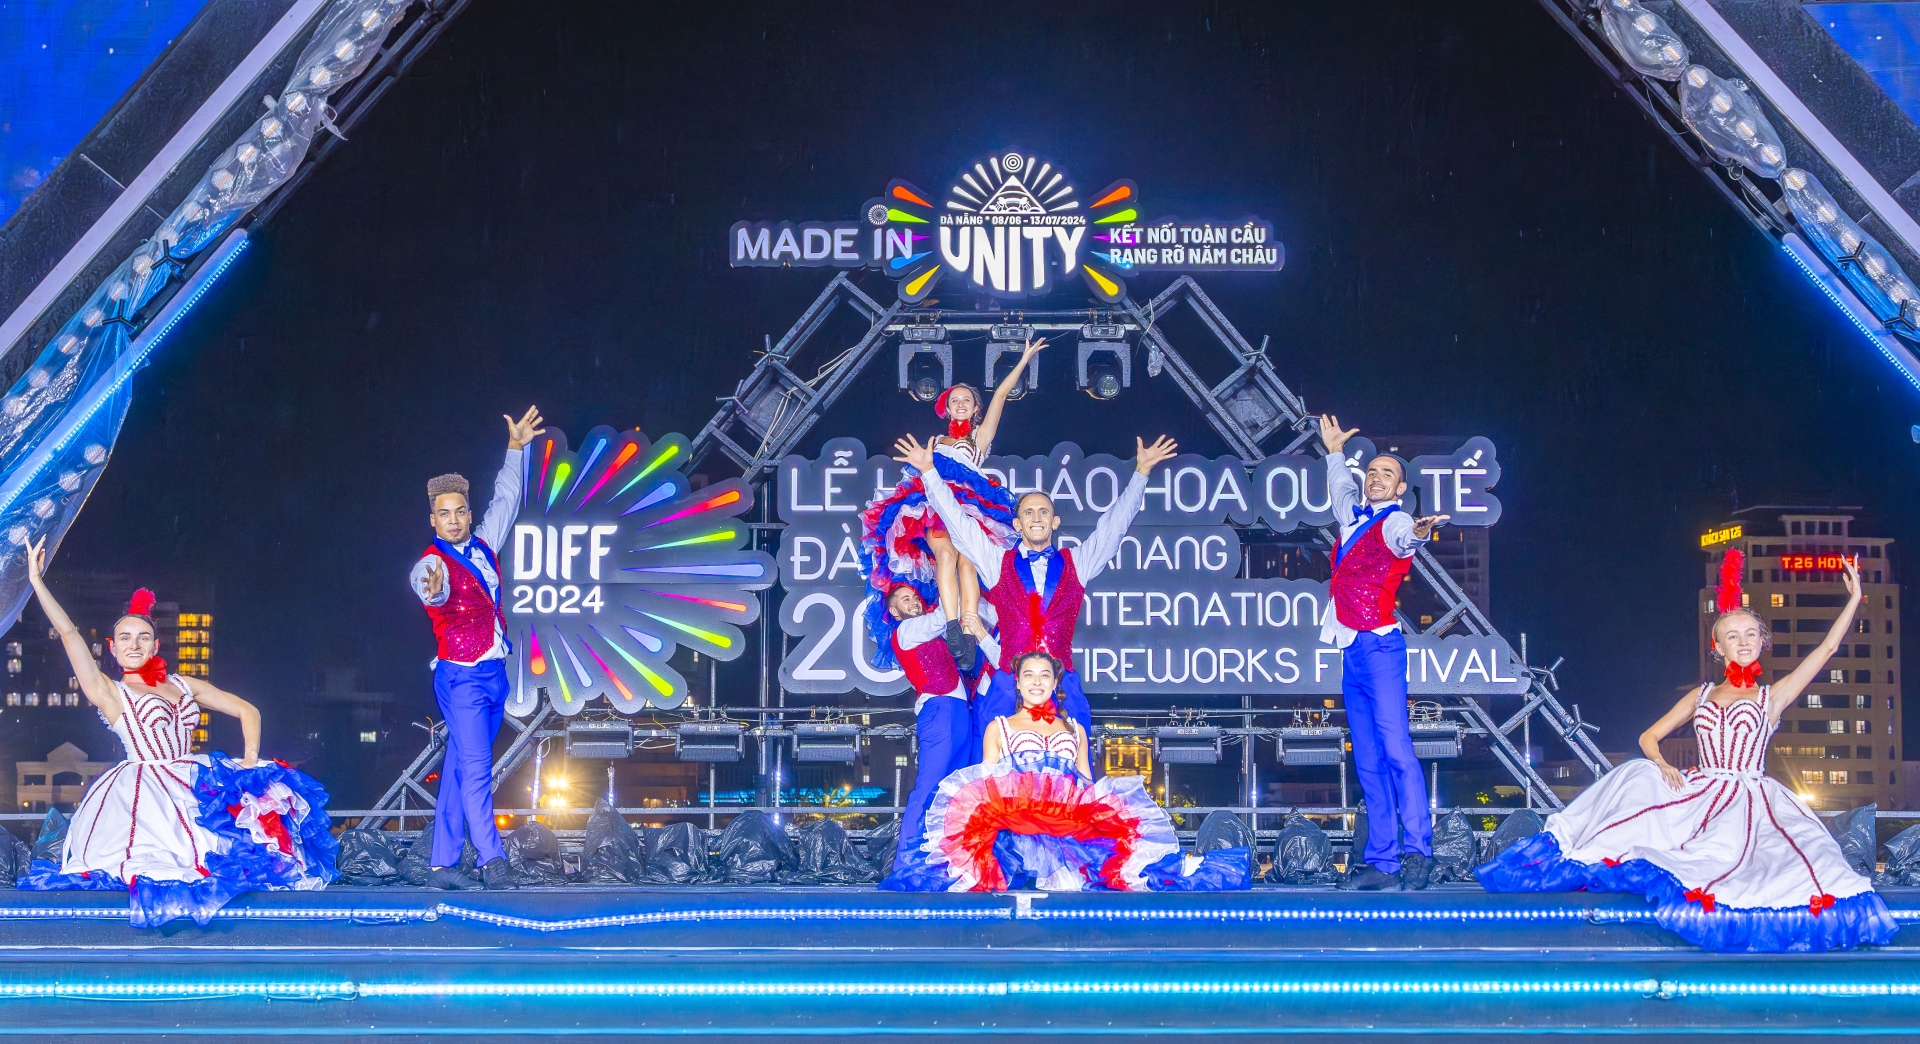 Vũ điệu Cancan tràn đầy năng lượng của Pháp được trình diễn trên sân khấu DIFF chính là dấu gạch nối cho sự đoàn kết các dân tộc, đúng như tinh thần của chủ đề chính lễ hội năm nay - “Made in Unity - Kết nối toàn cầu - Rạng rỡ năm châu”. 